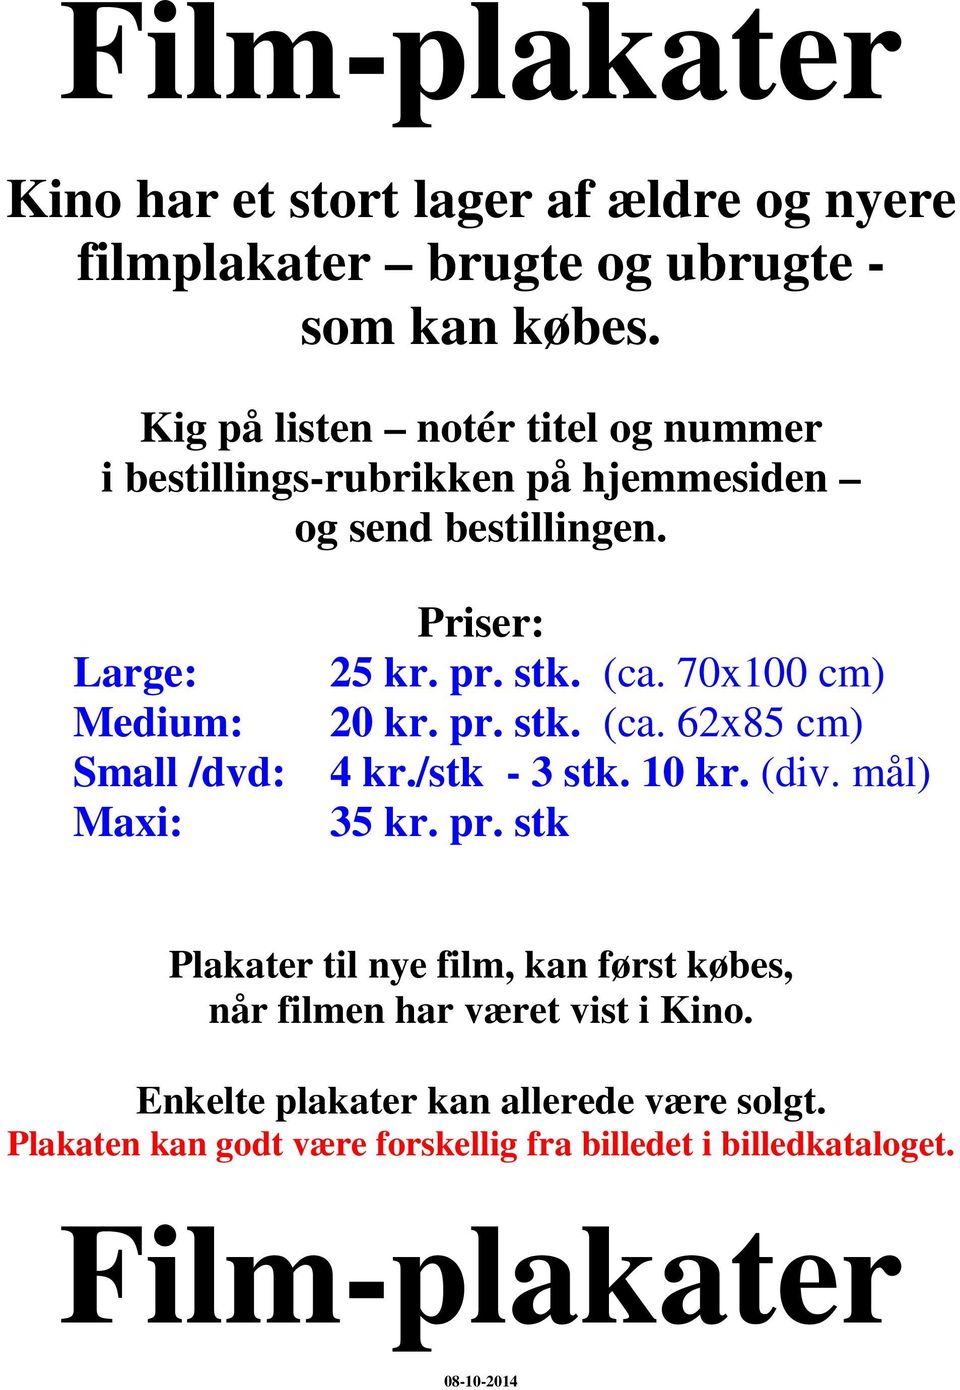 Film-plakater. Kino har et stort lager af ældre og nyere filmplakater brugte  og ubrugte - som kan købes. - PDF Free Download